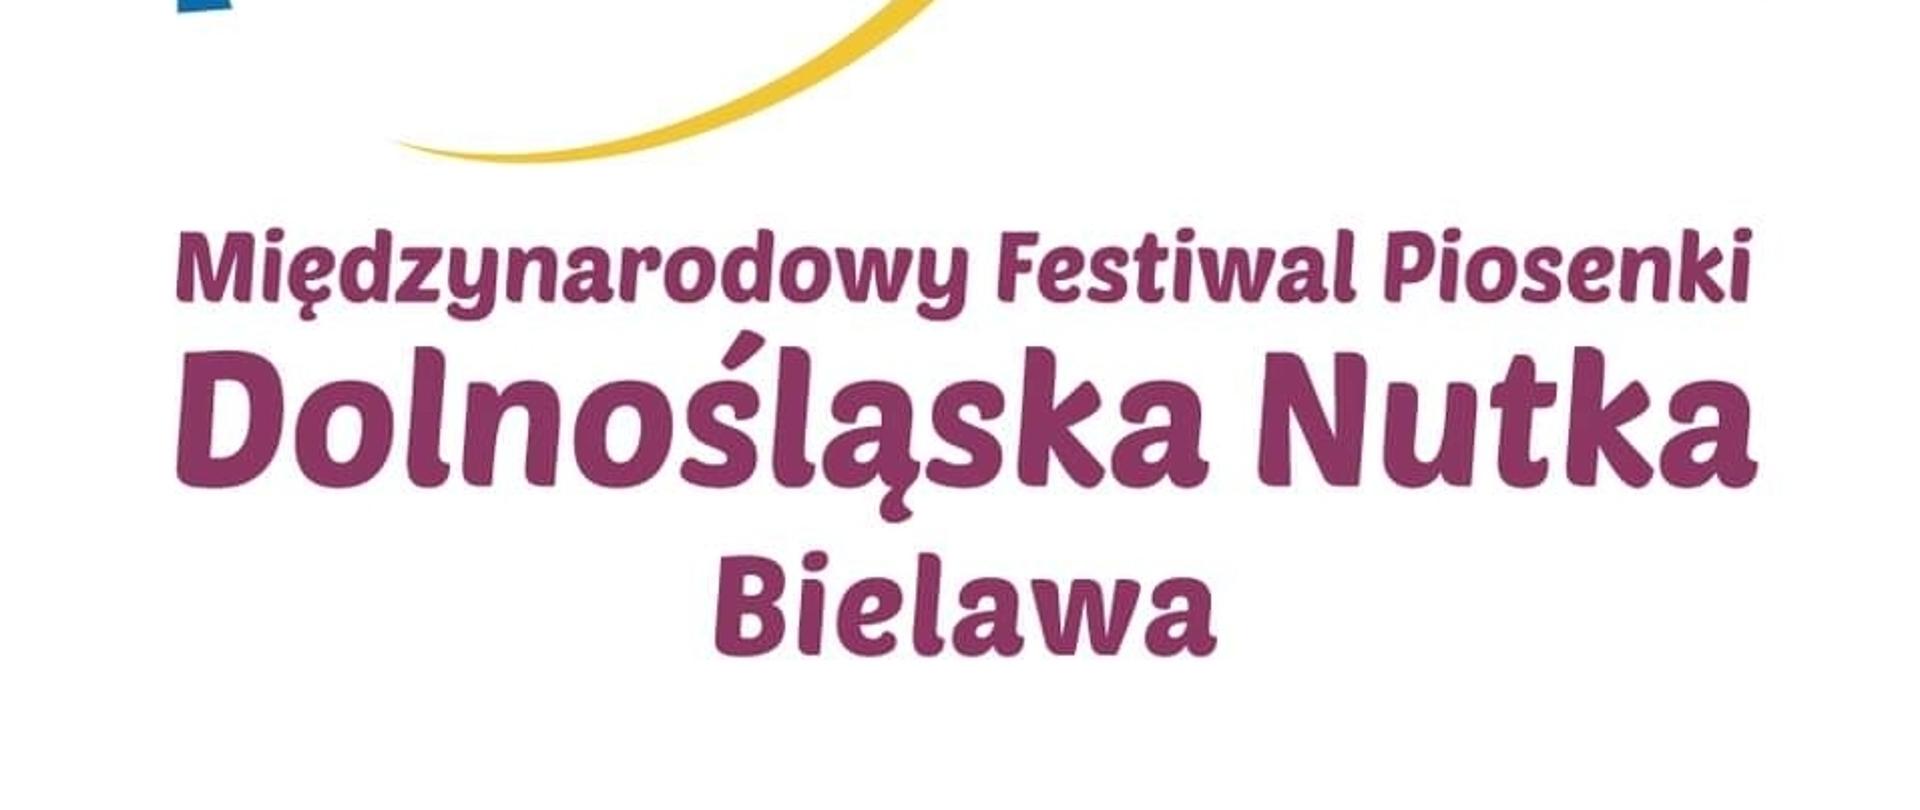 Plakat Miedzynarodowego Festiwalu Piosenki Dolnośląska Butka obywającego się w Bielawie. Na kolorowym tle biało-żołta nuta, z lewej strony sybol Unii Eyropejskiej (okrąg złozony z 12 złotych gwiazd). 